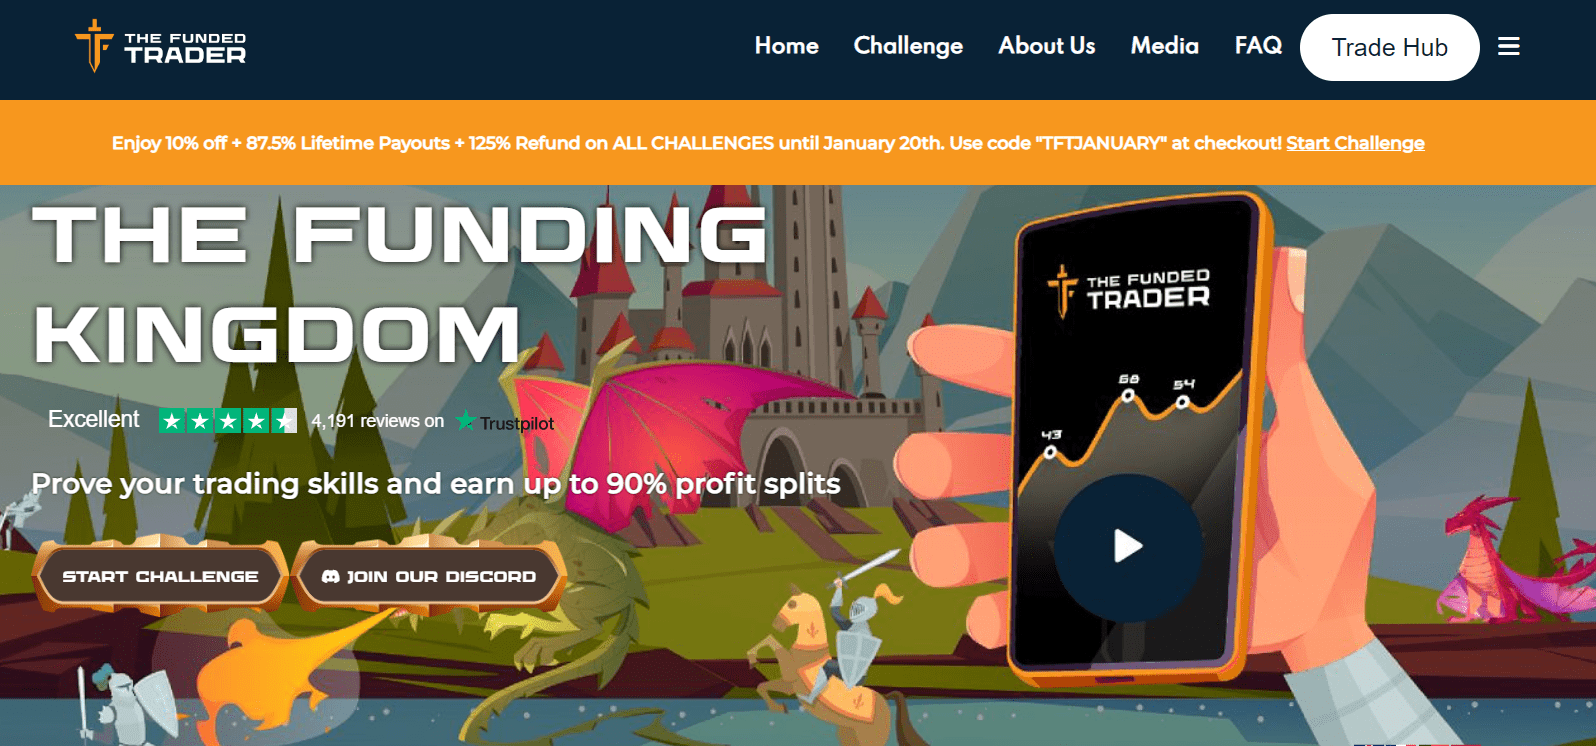 Rezension von The Funded Trader – Challenge starten